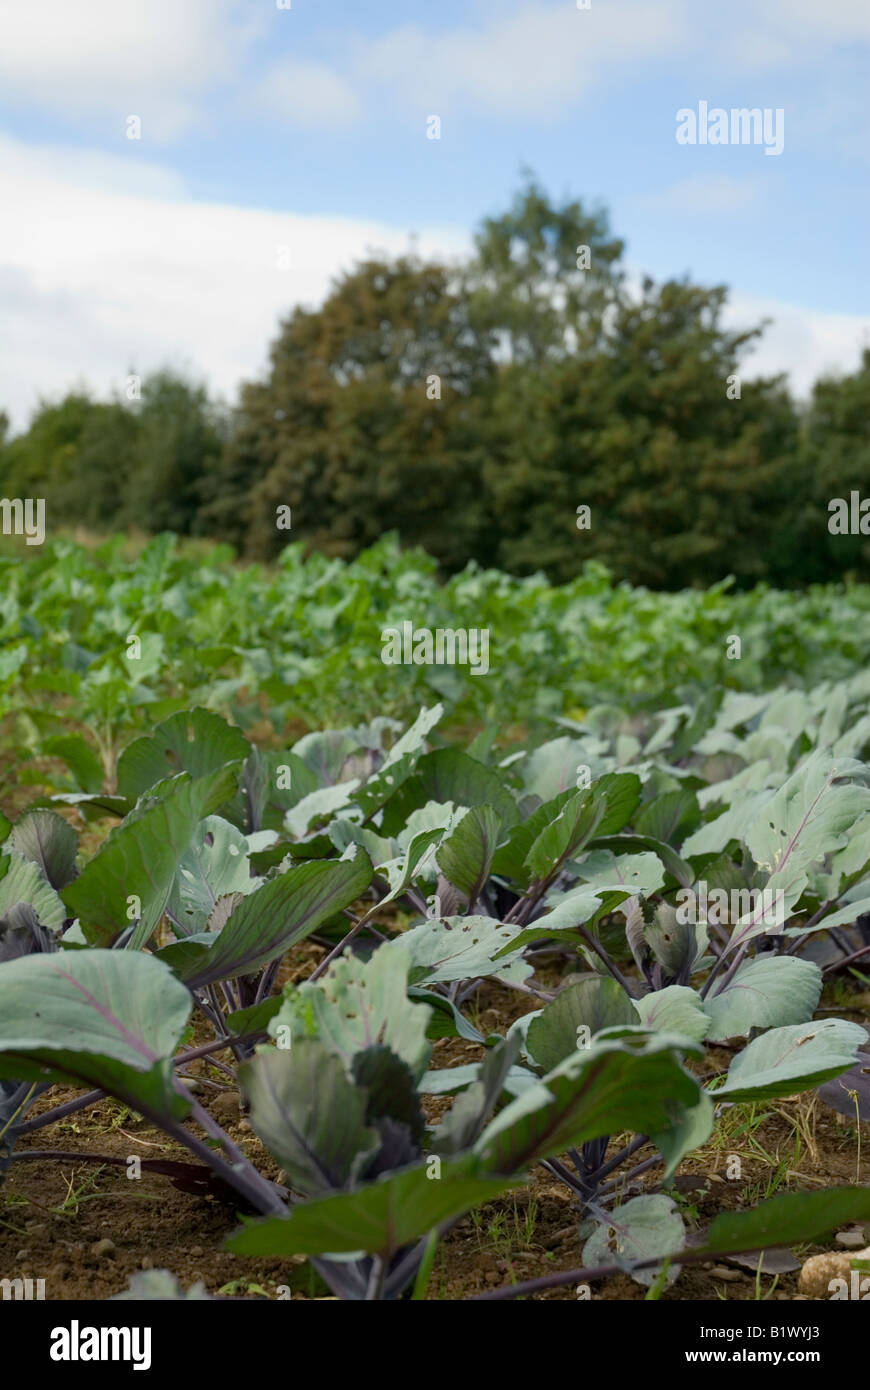 La culture des légumes dans le terrain avec arbres et ciel bleu Banque D'Images